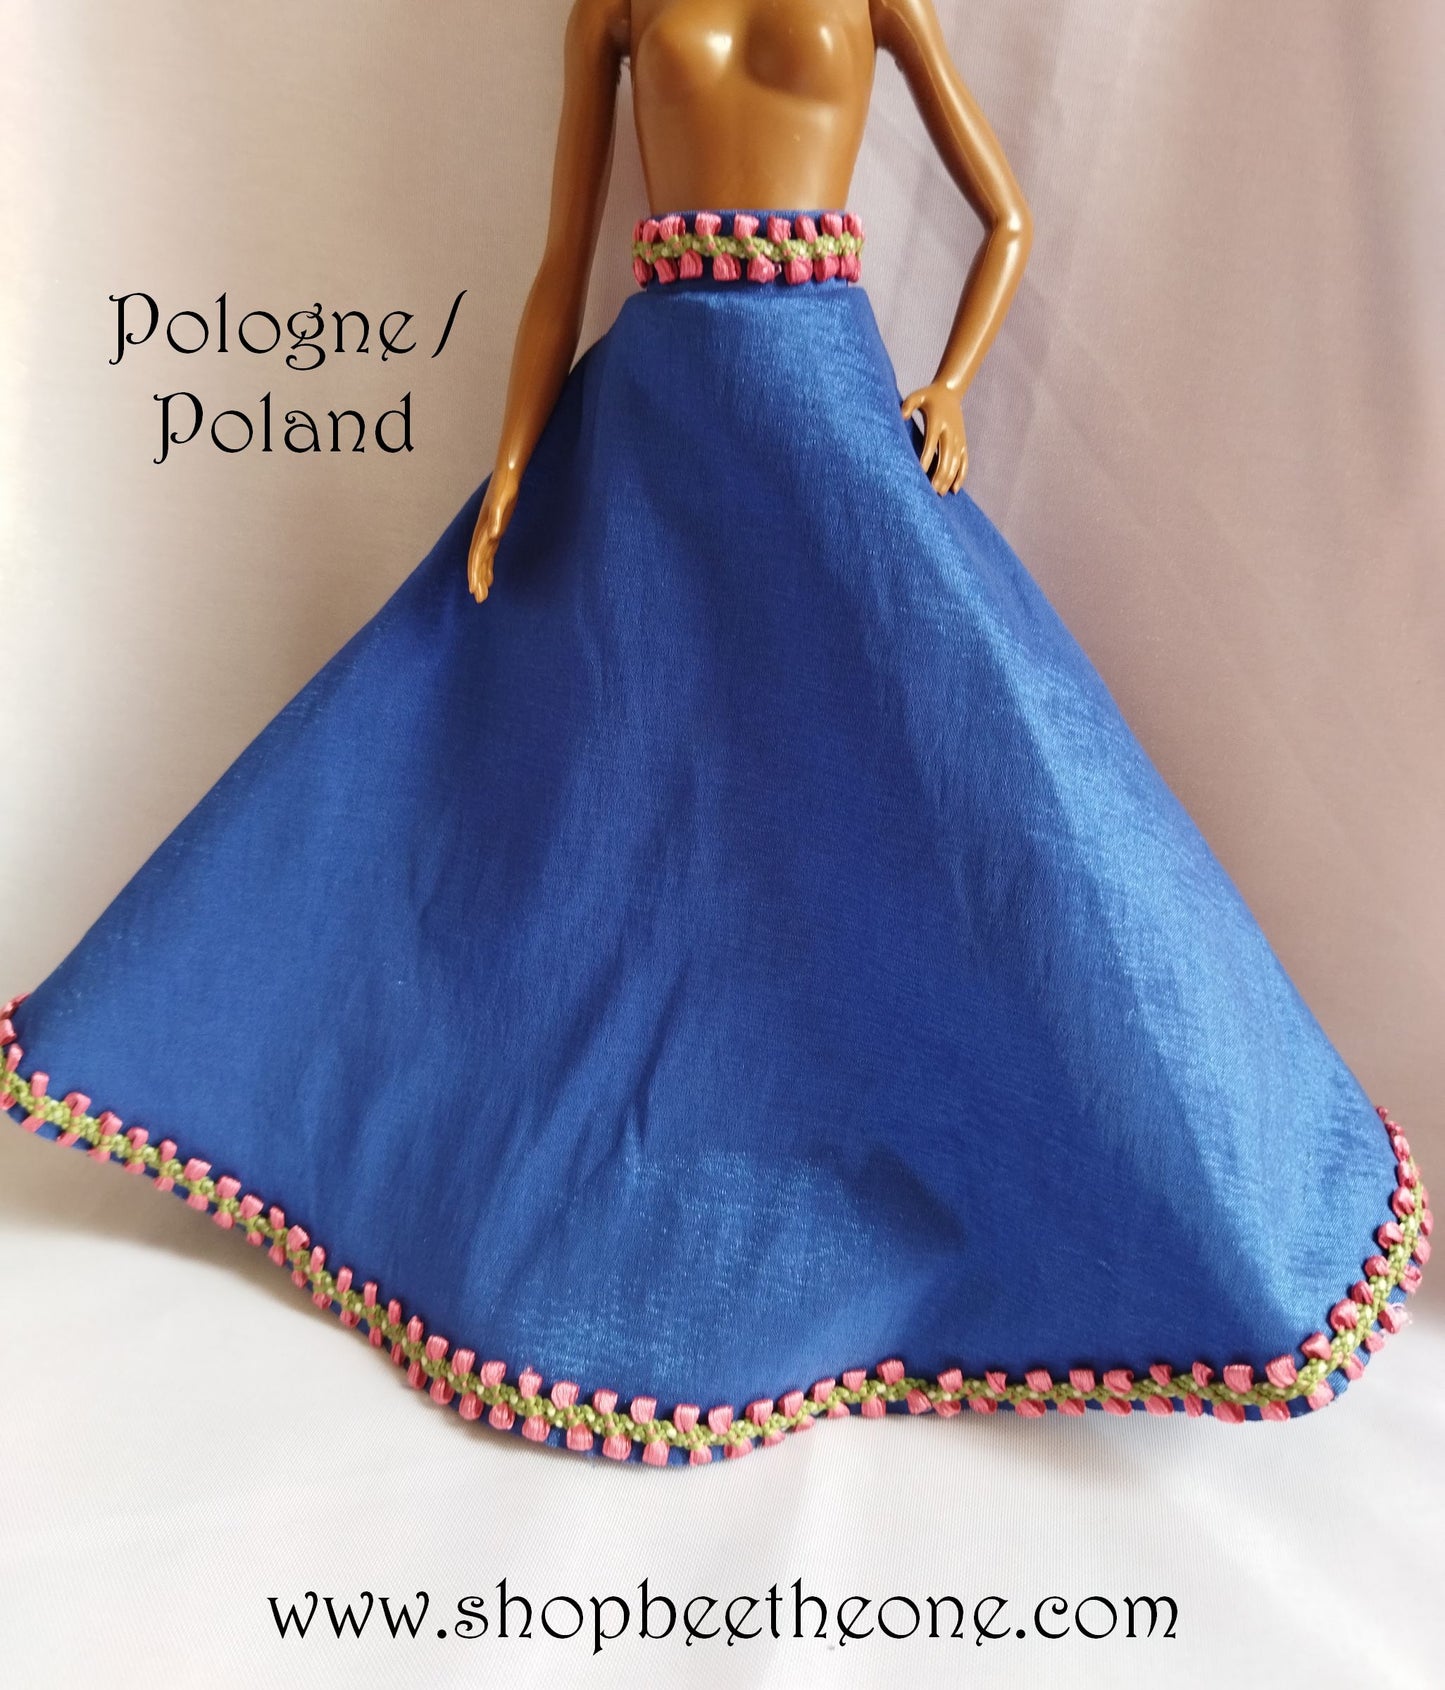 Barbie Les Robes de mes Voyages - Autriche et Pologne - RBA 2012/2013 - Vêtements